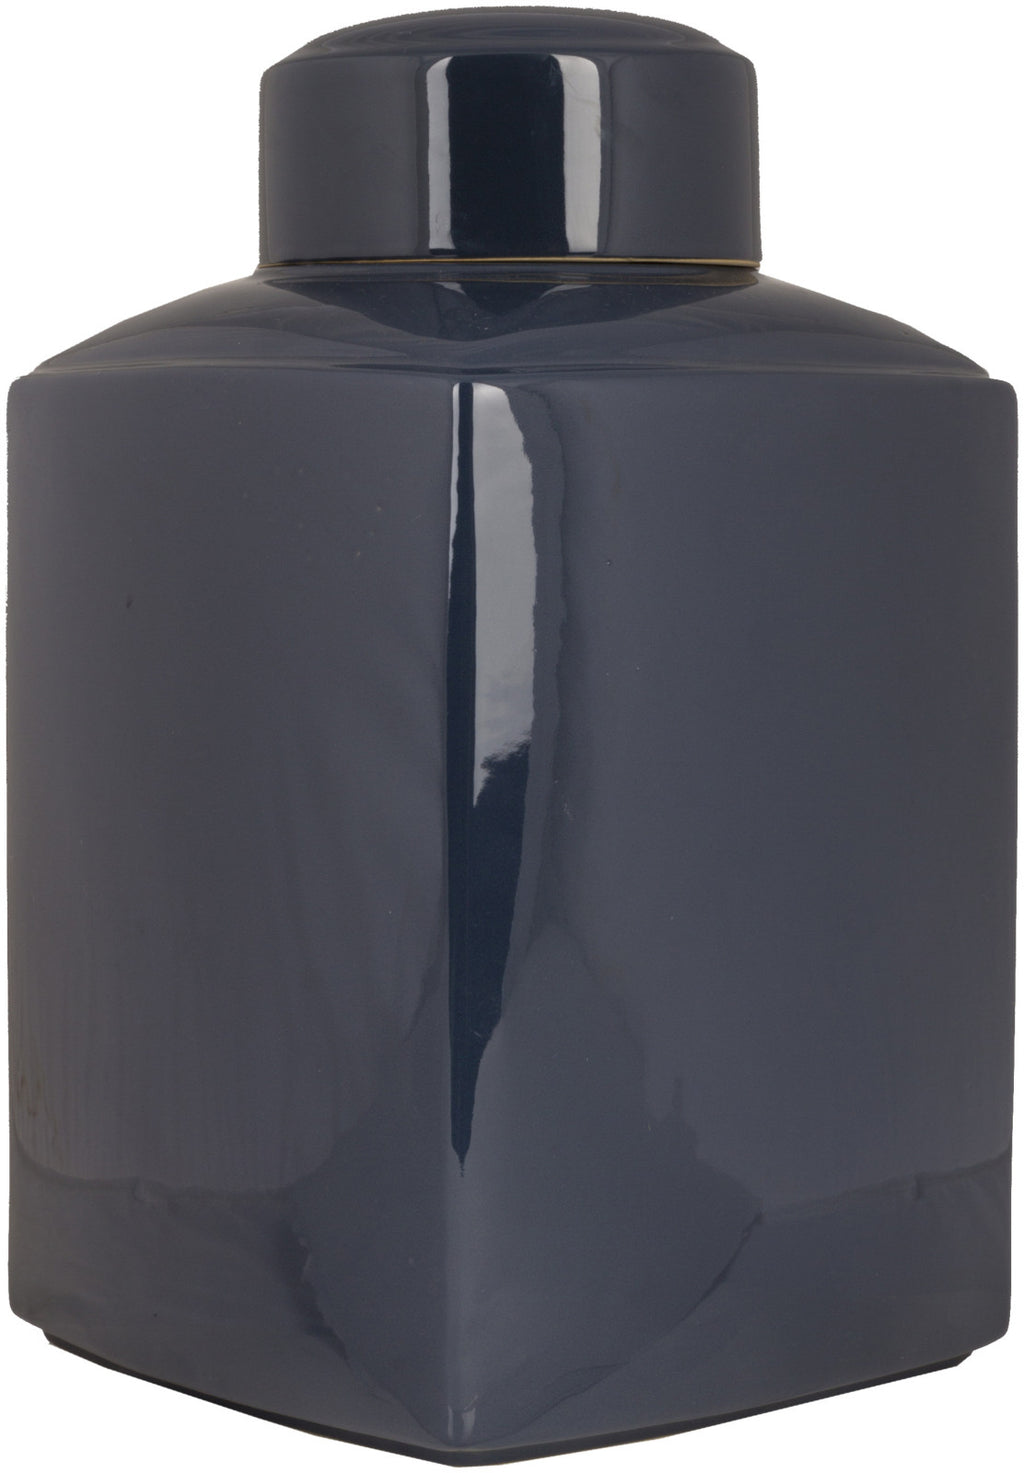 Surya Aegean AHJ-900 Jar Jar Small 8.5 X 8.5 X 12.5 inches